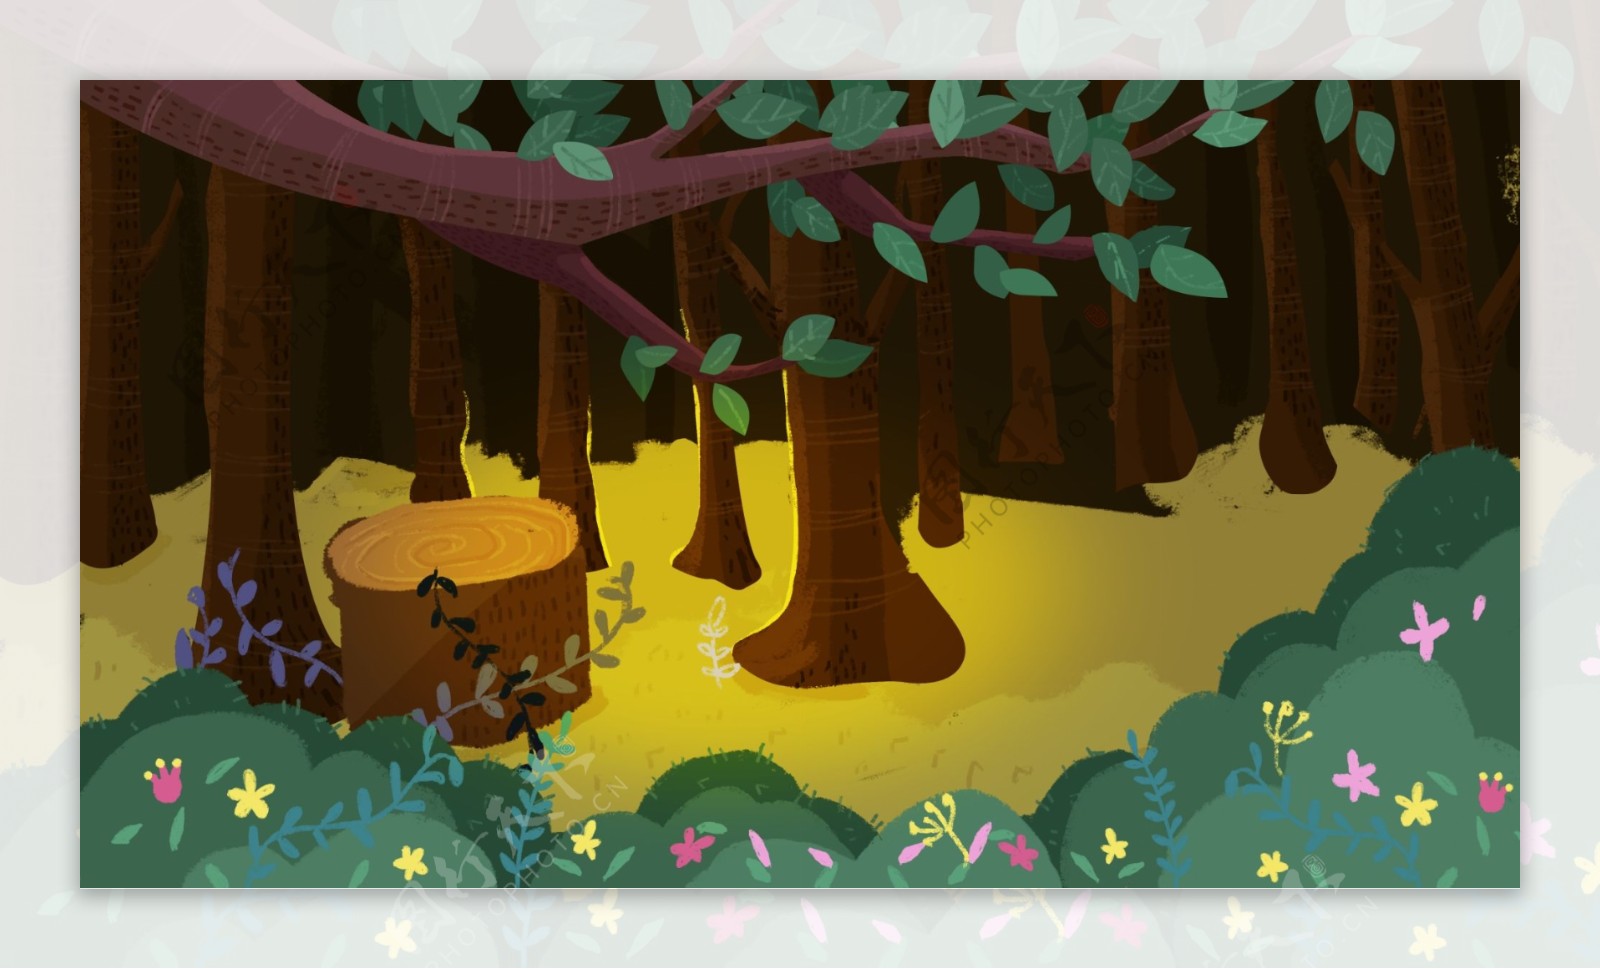 童话森林背景设计